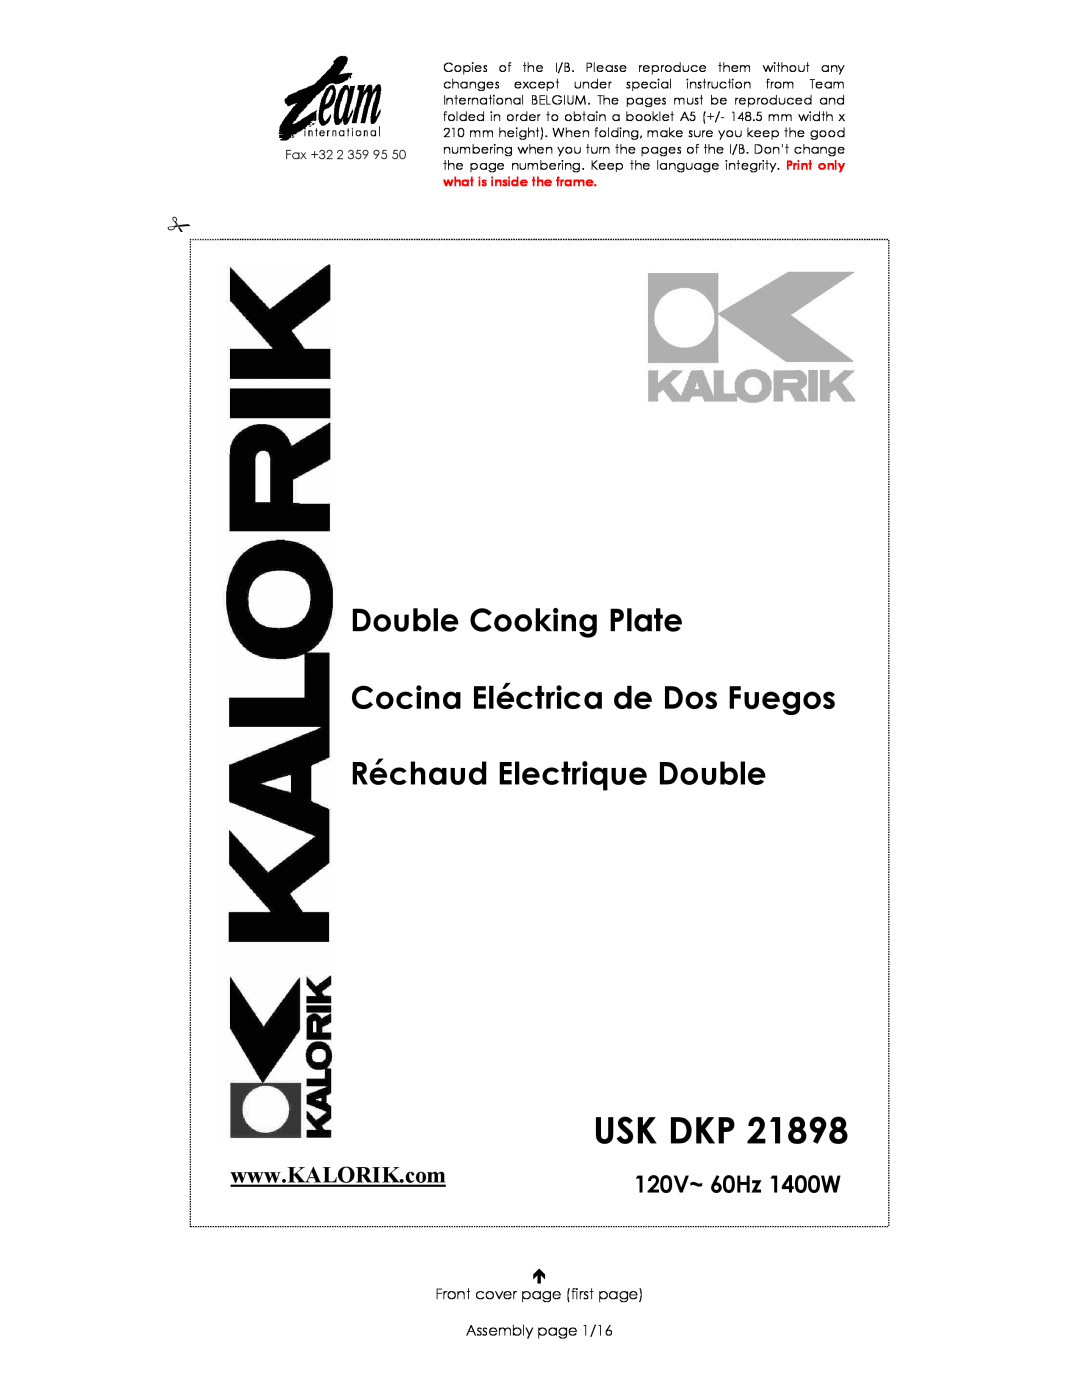 Kalorik USK DKP 21898 manual Usk Dkp, Double Cooking Plate, Cocina Eléctrica de Dos Fuegos, Réchaud Electrique Double 